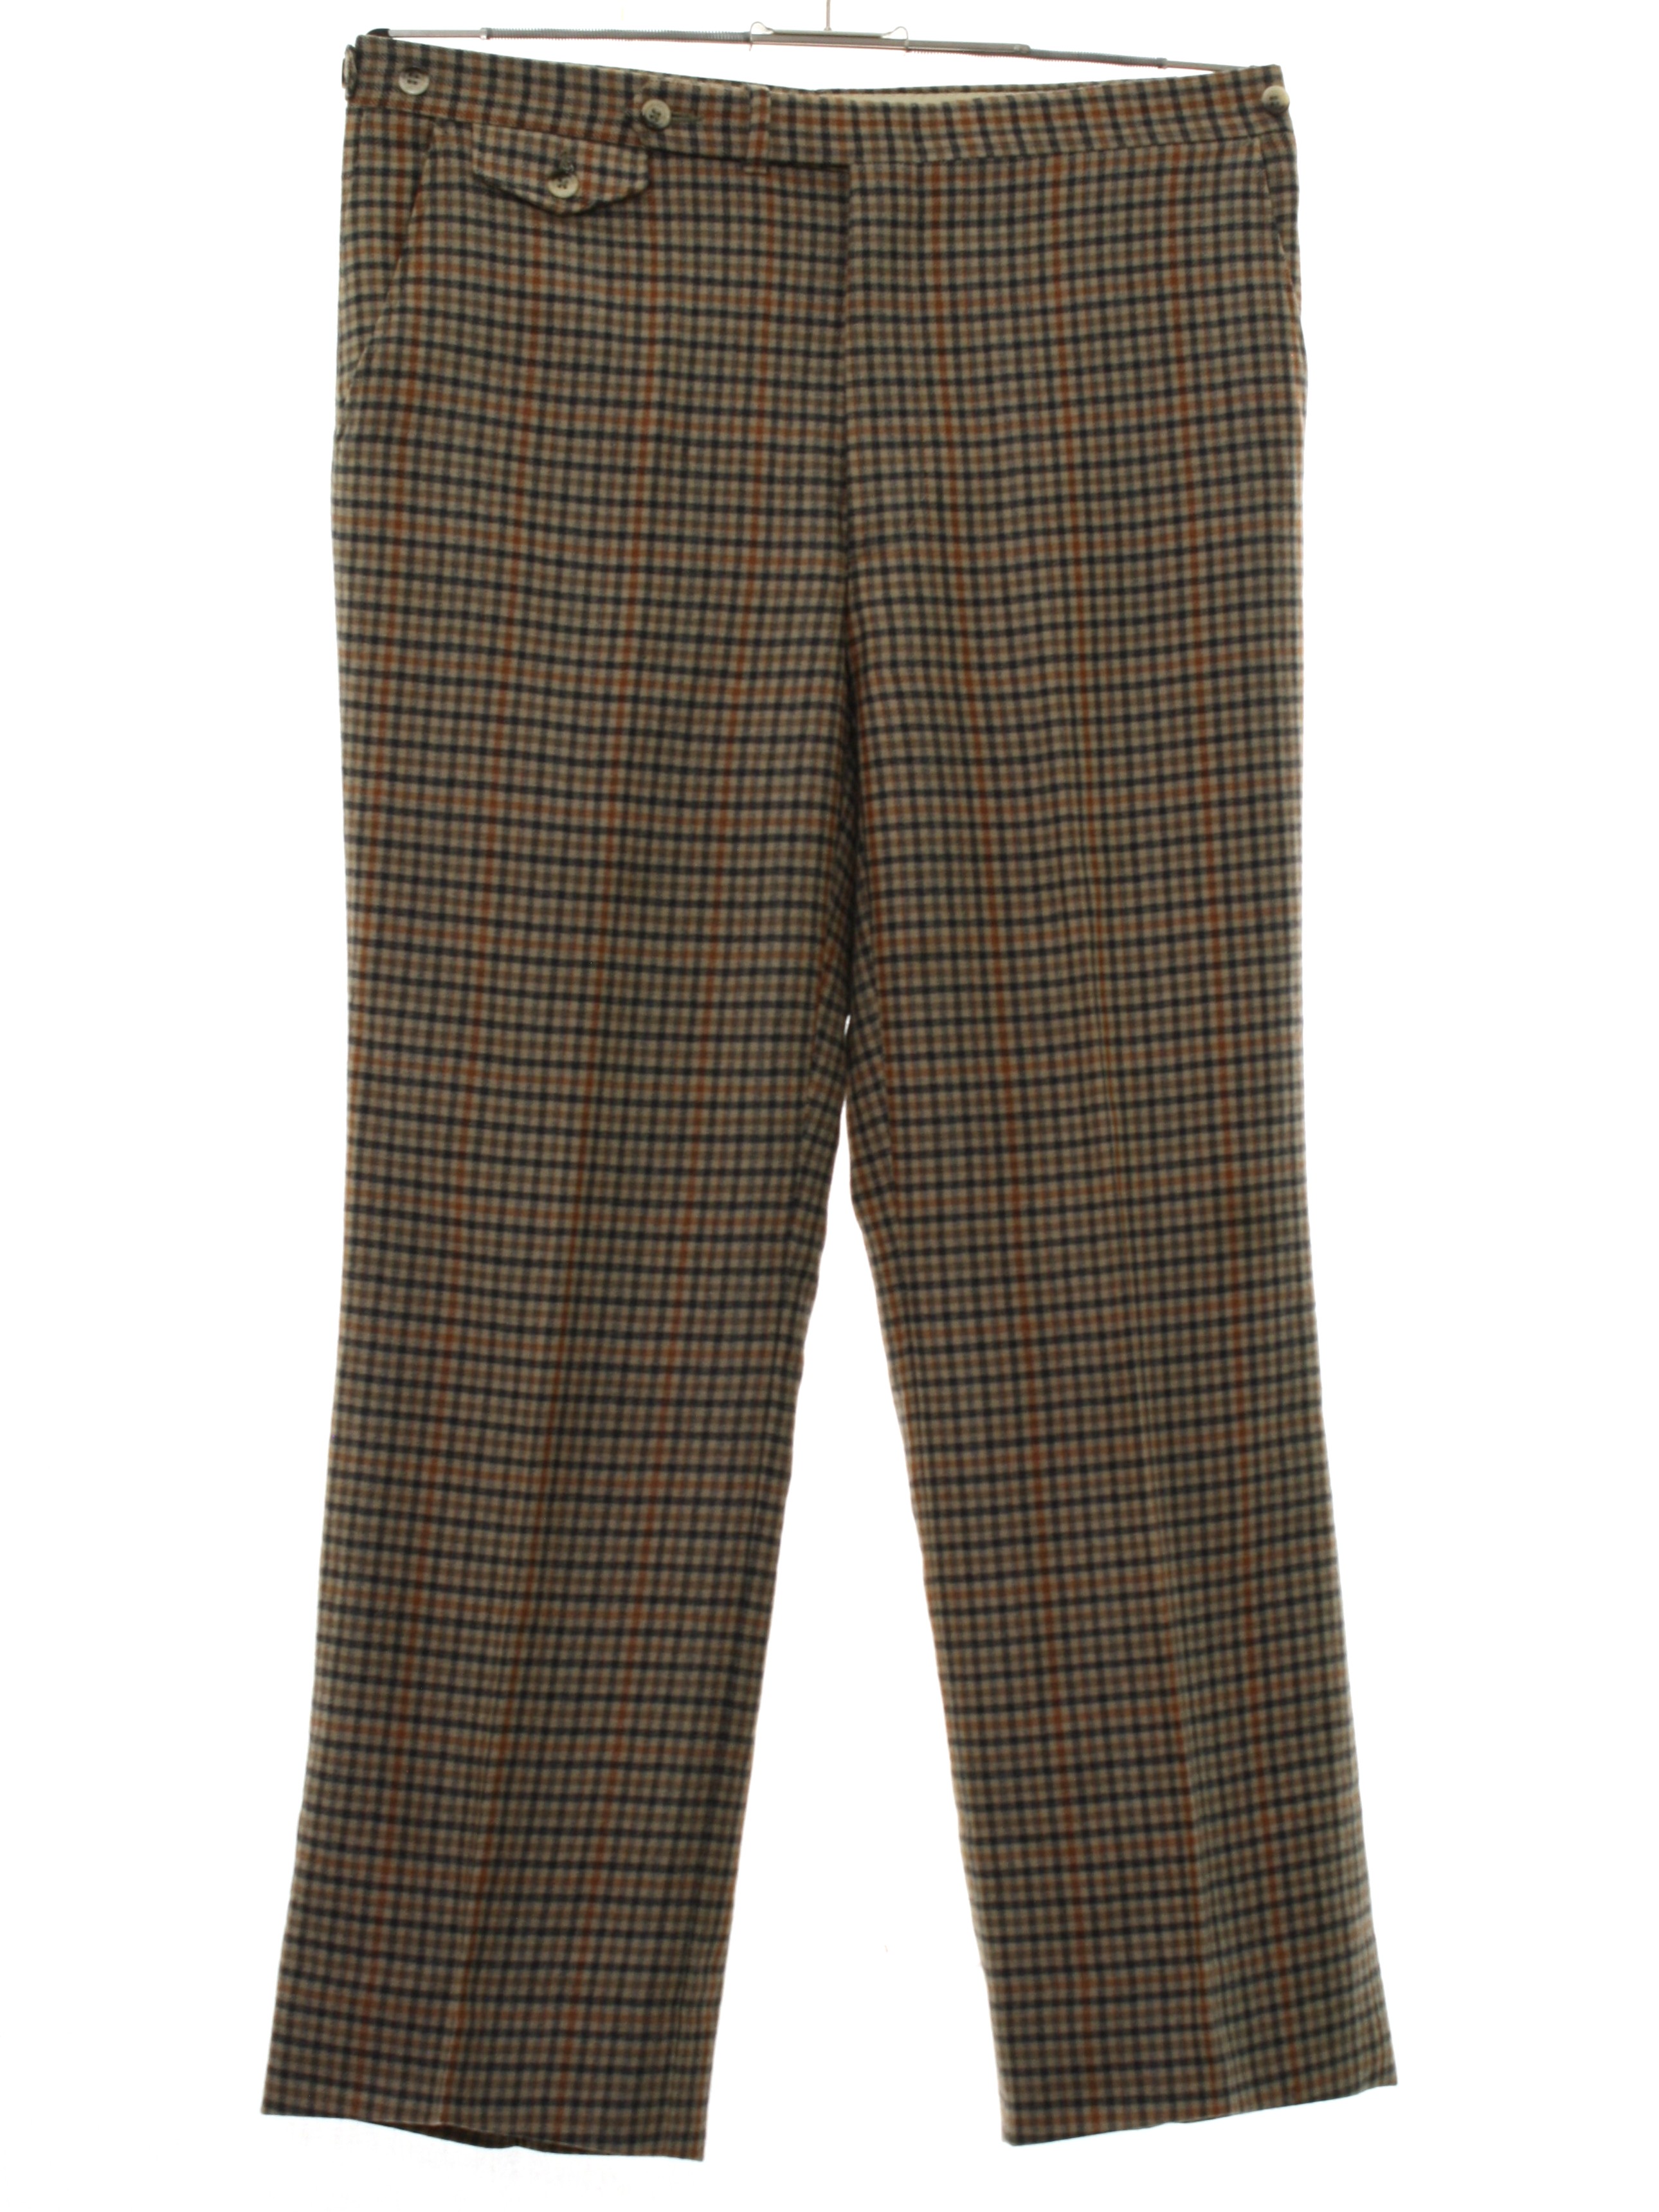 Vintage Arthurs Trousers 60's Pants: 60s -Arthurs Trousers- Mens tan ...